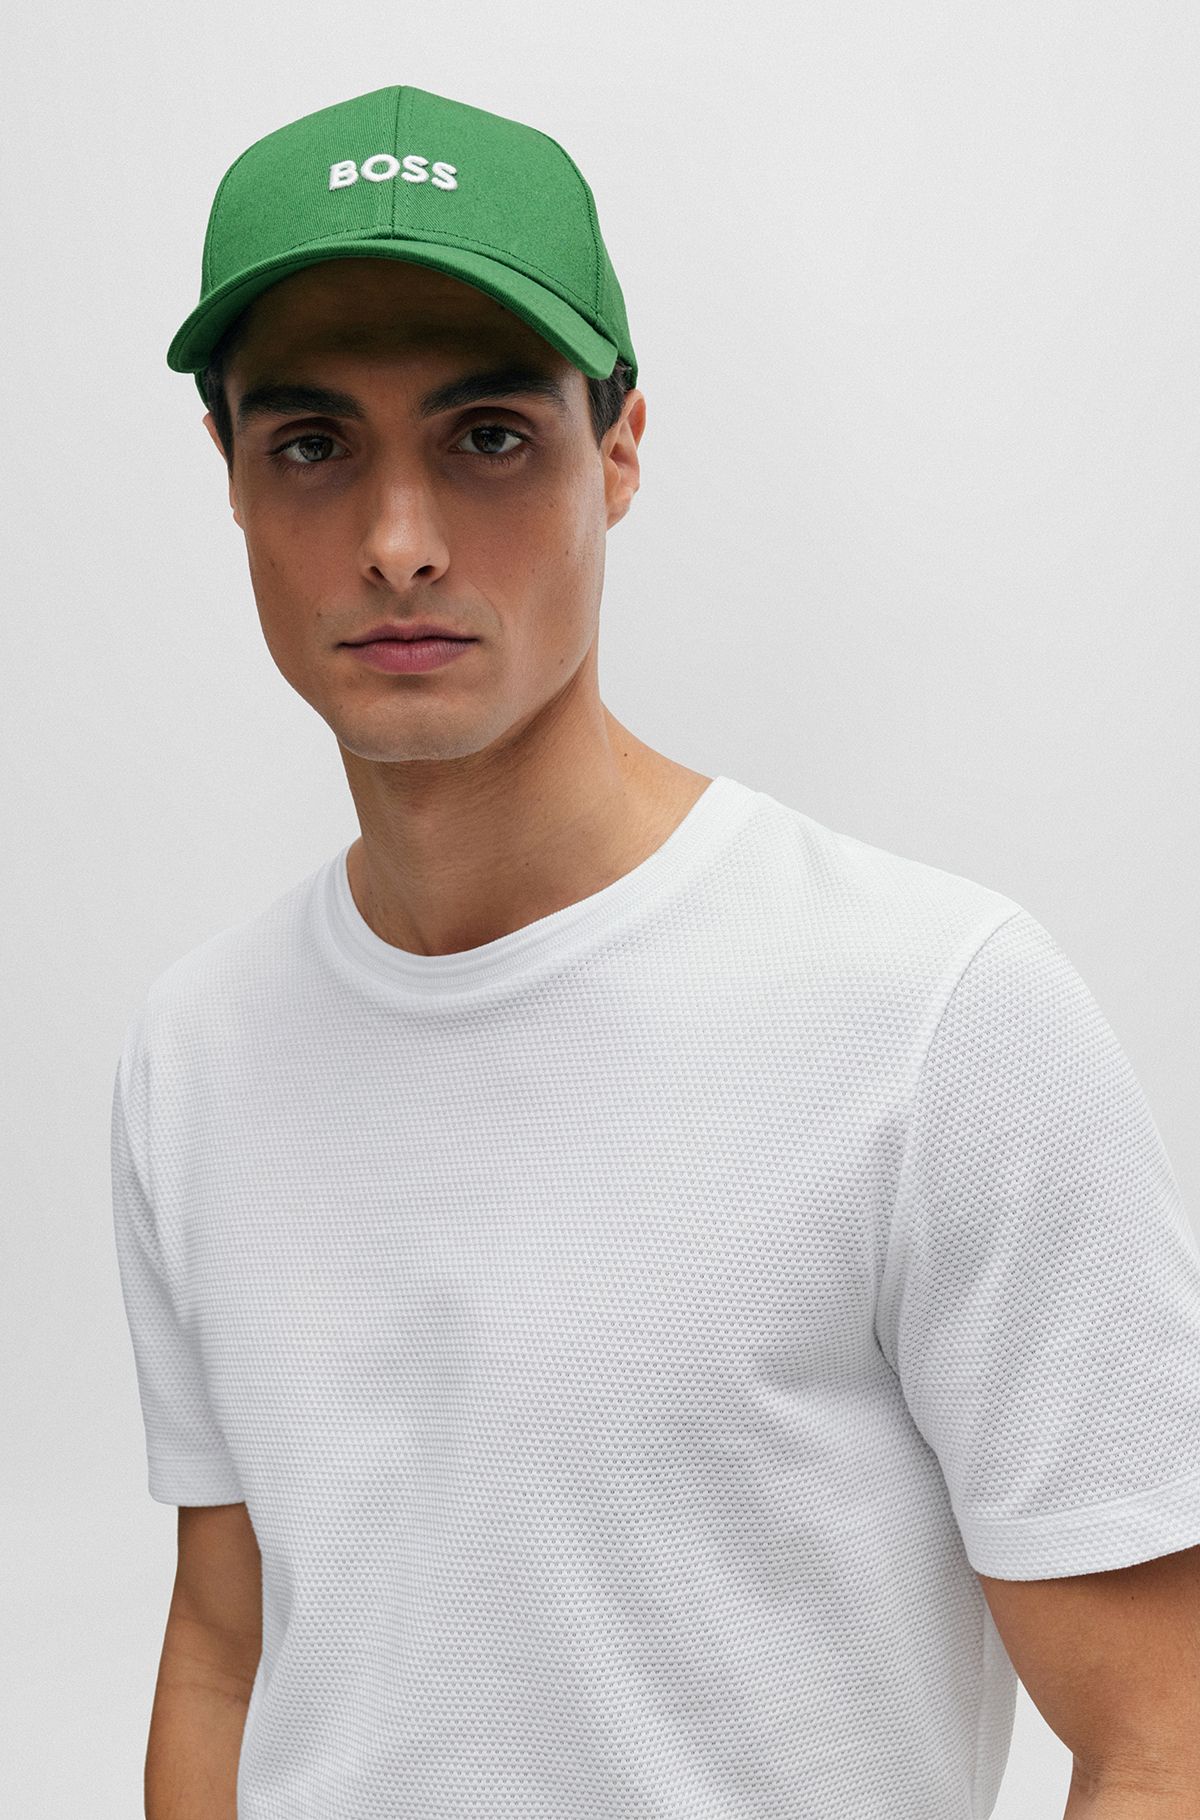 Men's Hats & Caps | Green | HUGO BOSS